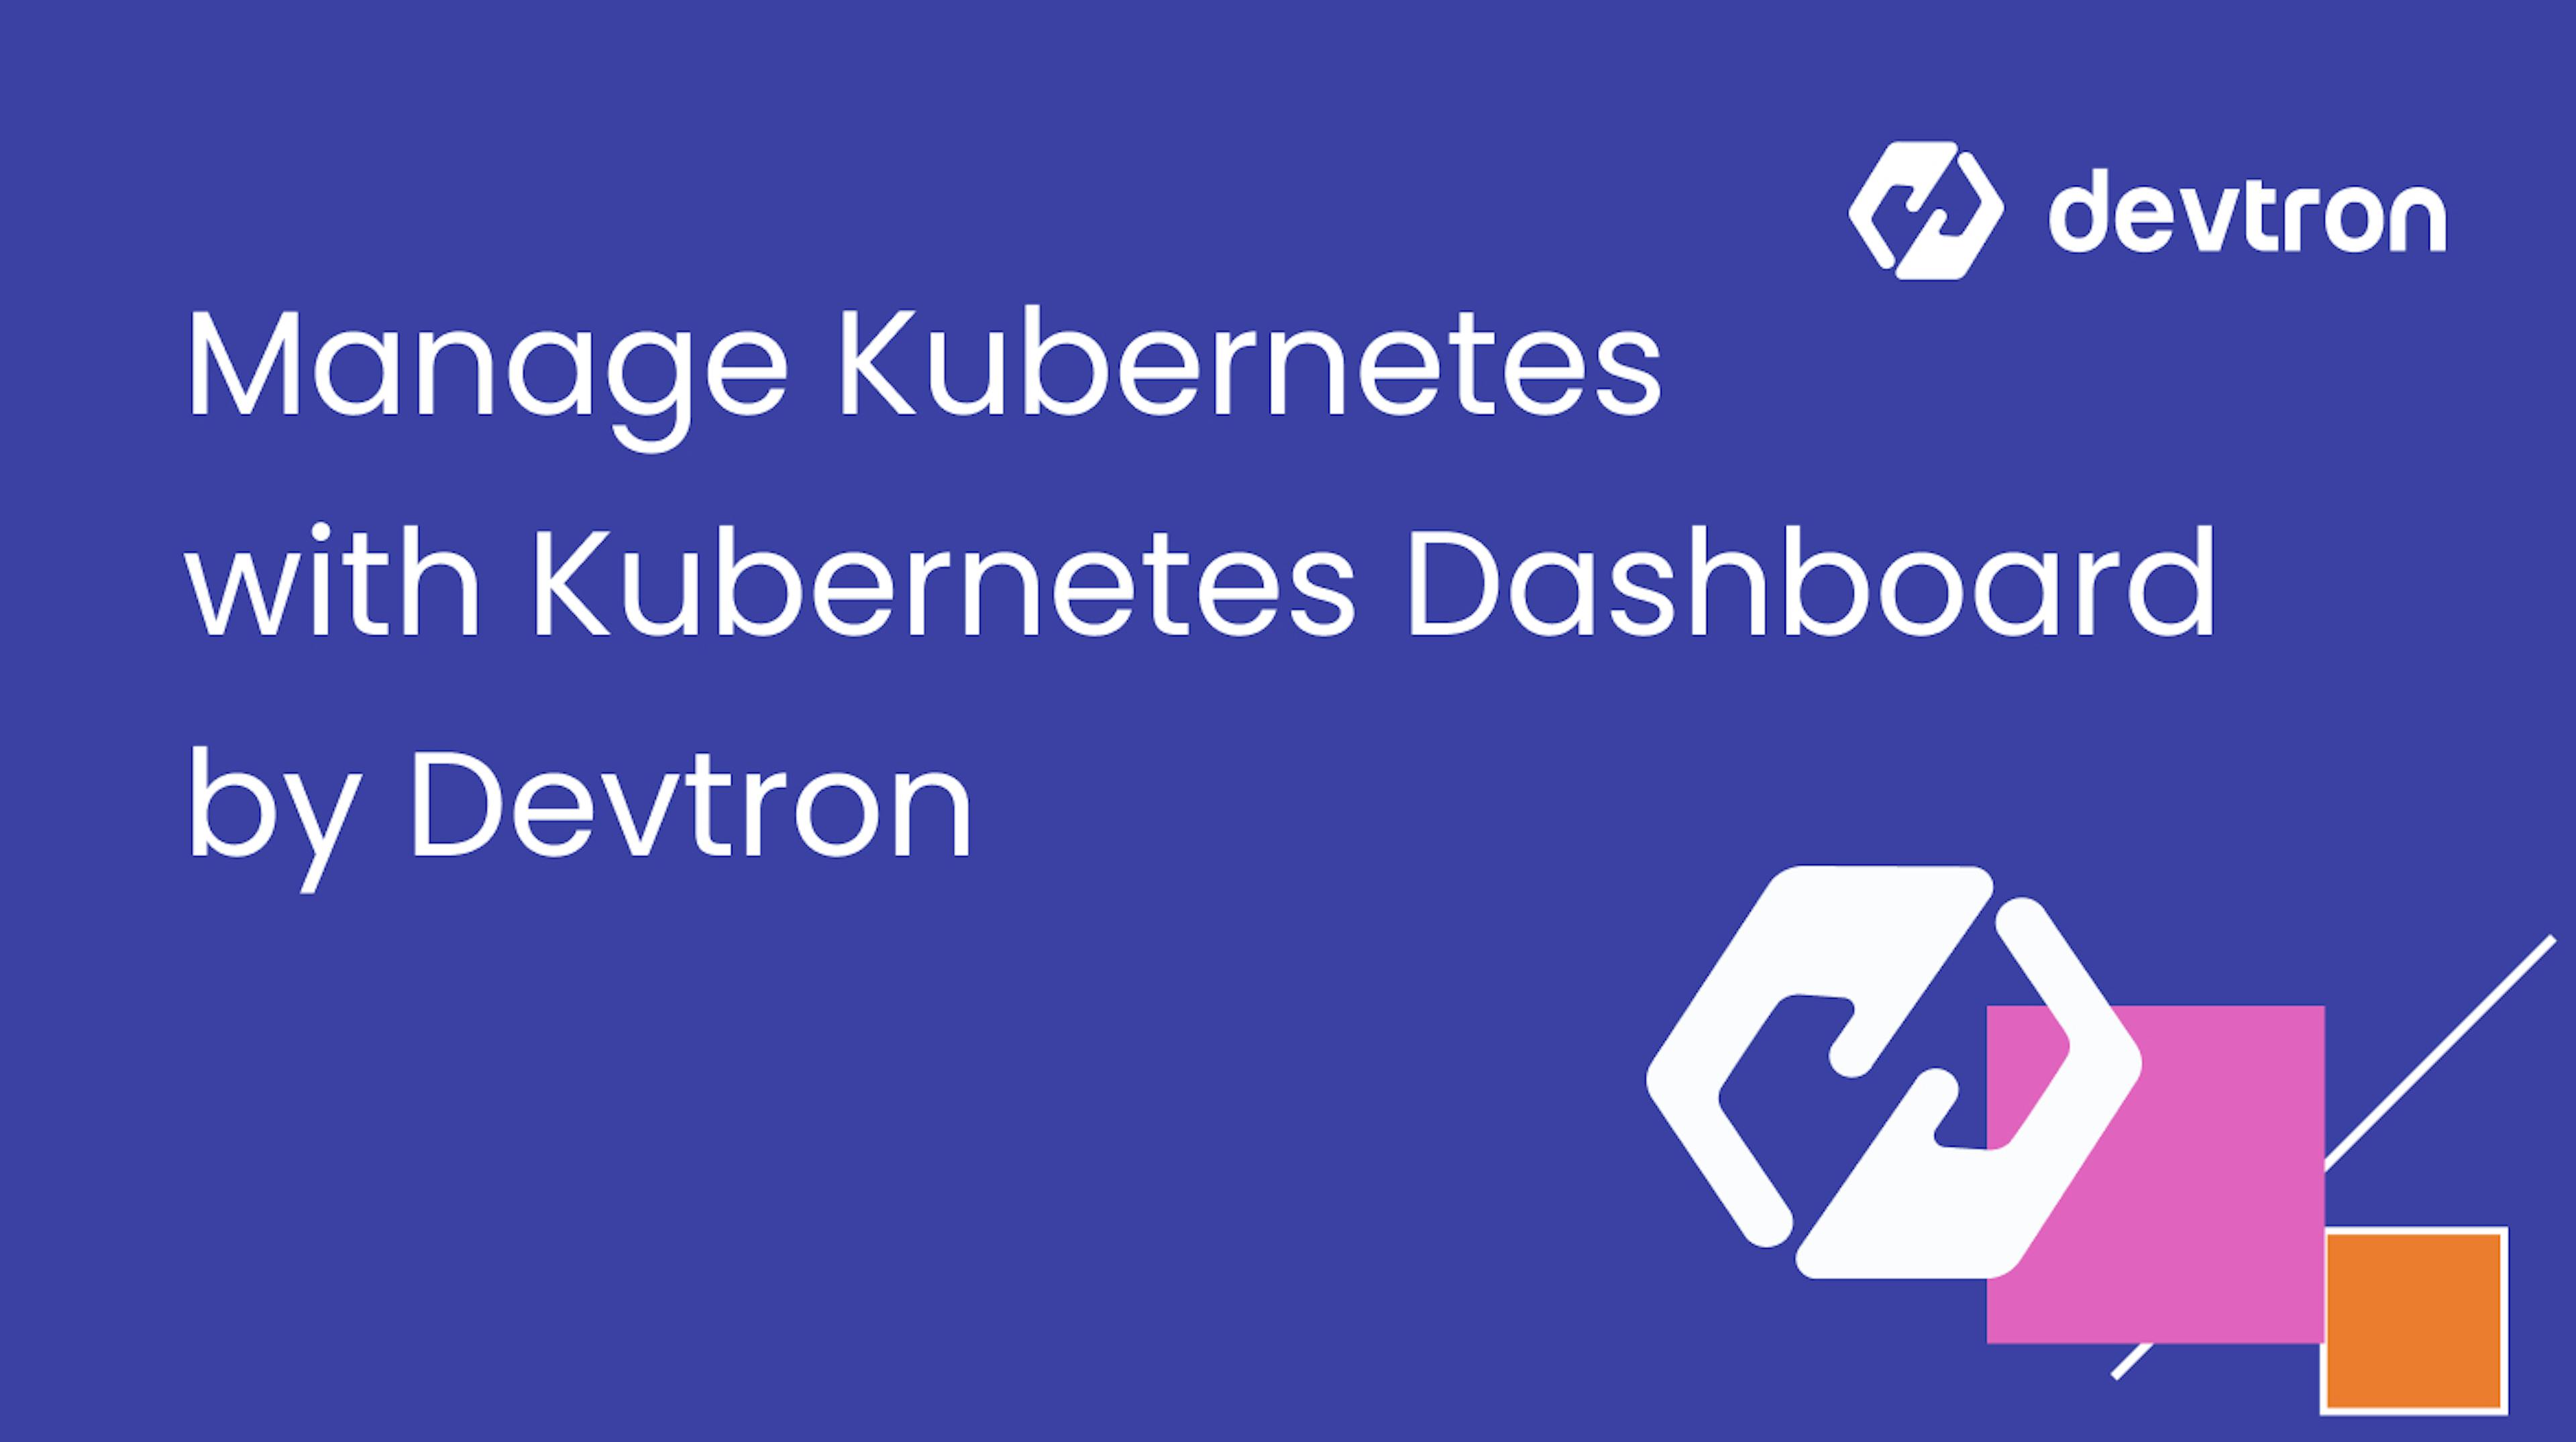 featured image - Comment gérer Kubernetes comme un pro avec Kubernetes Dashboard de Devtron